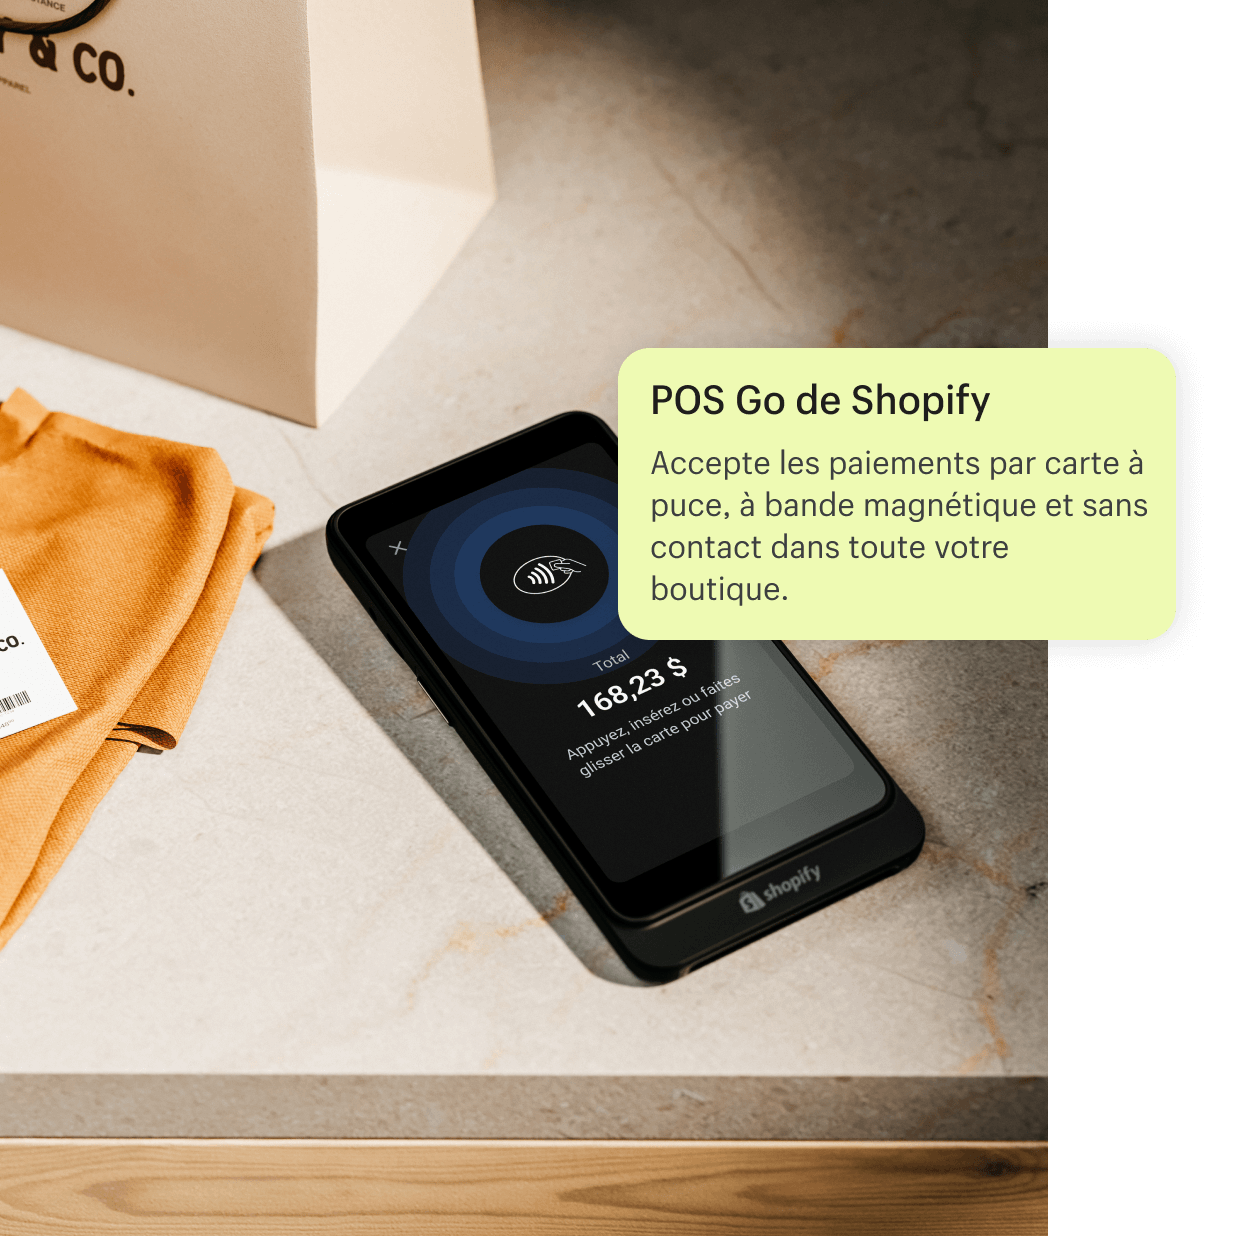 Image de l’appareil POS Go posé sur un comptoir après une transaction avec un(e) client(e). POS Go est le point de vente mobile de Shopify, qui accepte les paiements par carte bancaire avec ou sans contact.